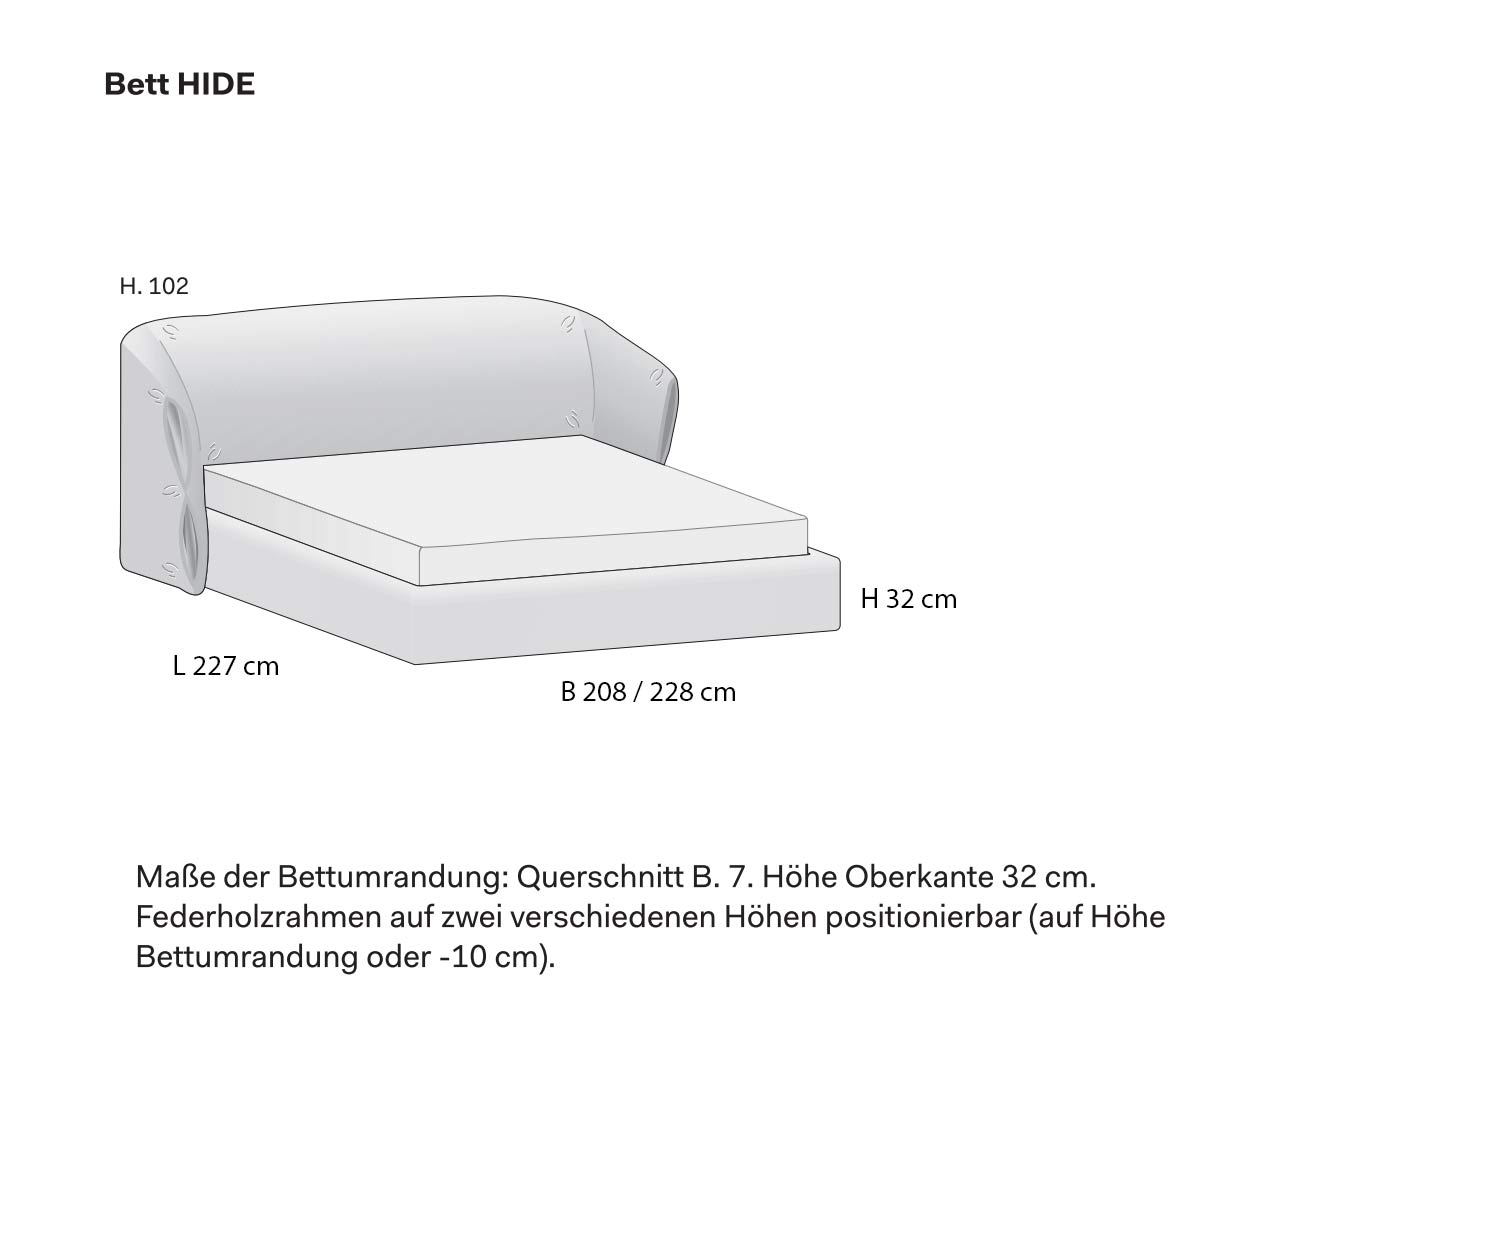 Upholstered bed Hide Novamobili Sketch Dimensions Sizes